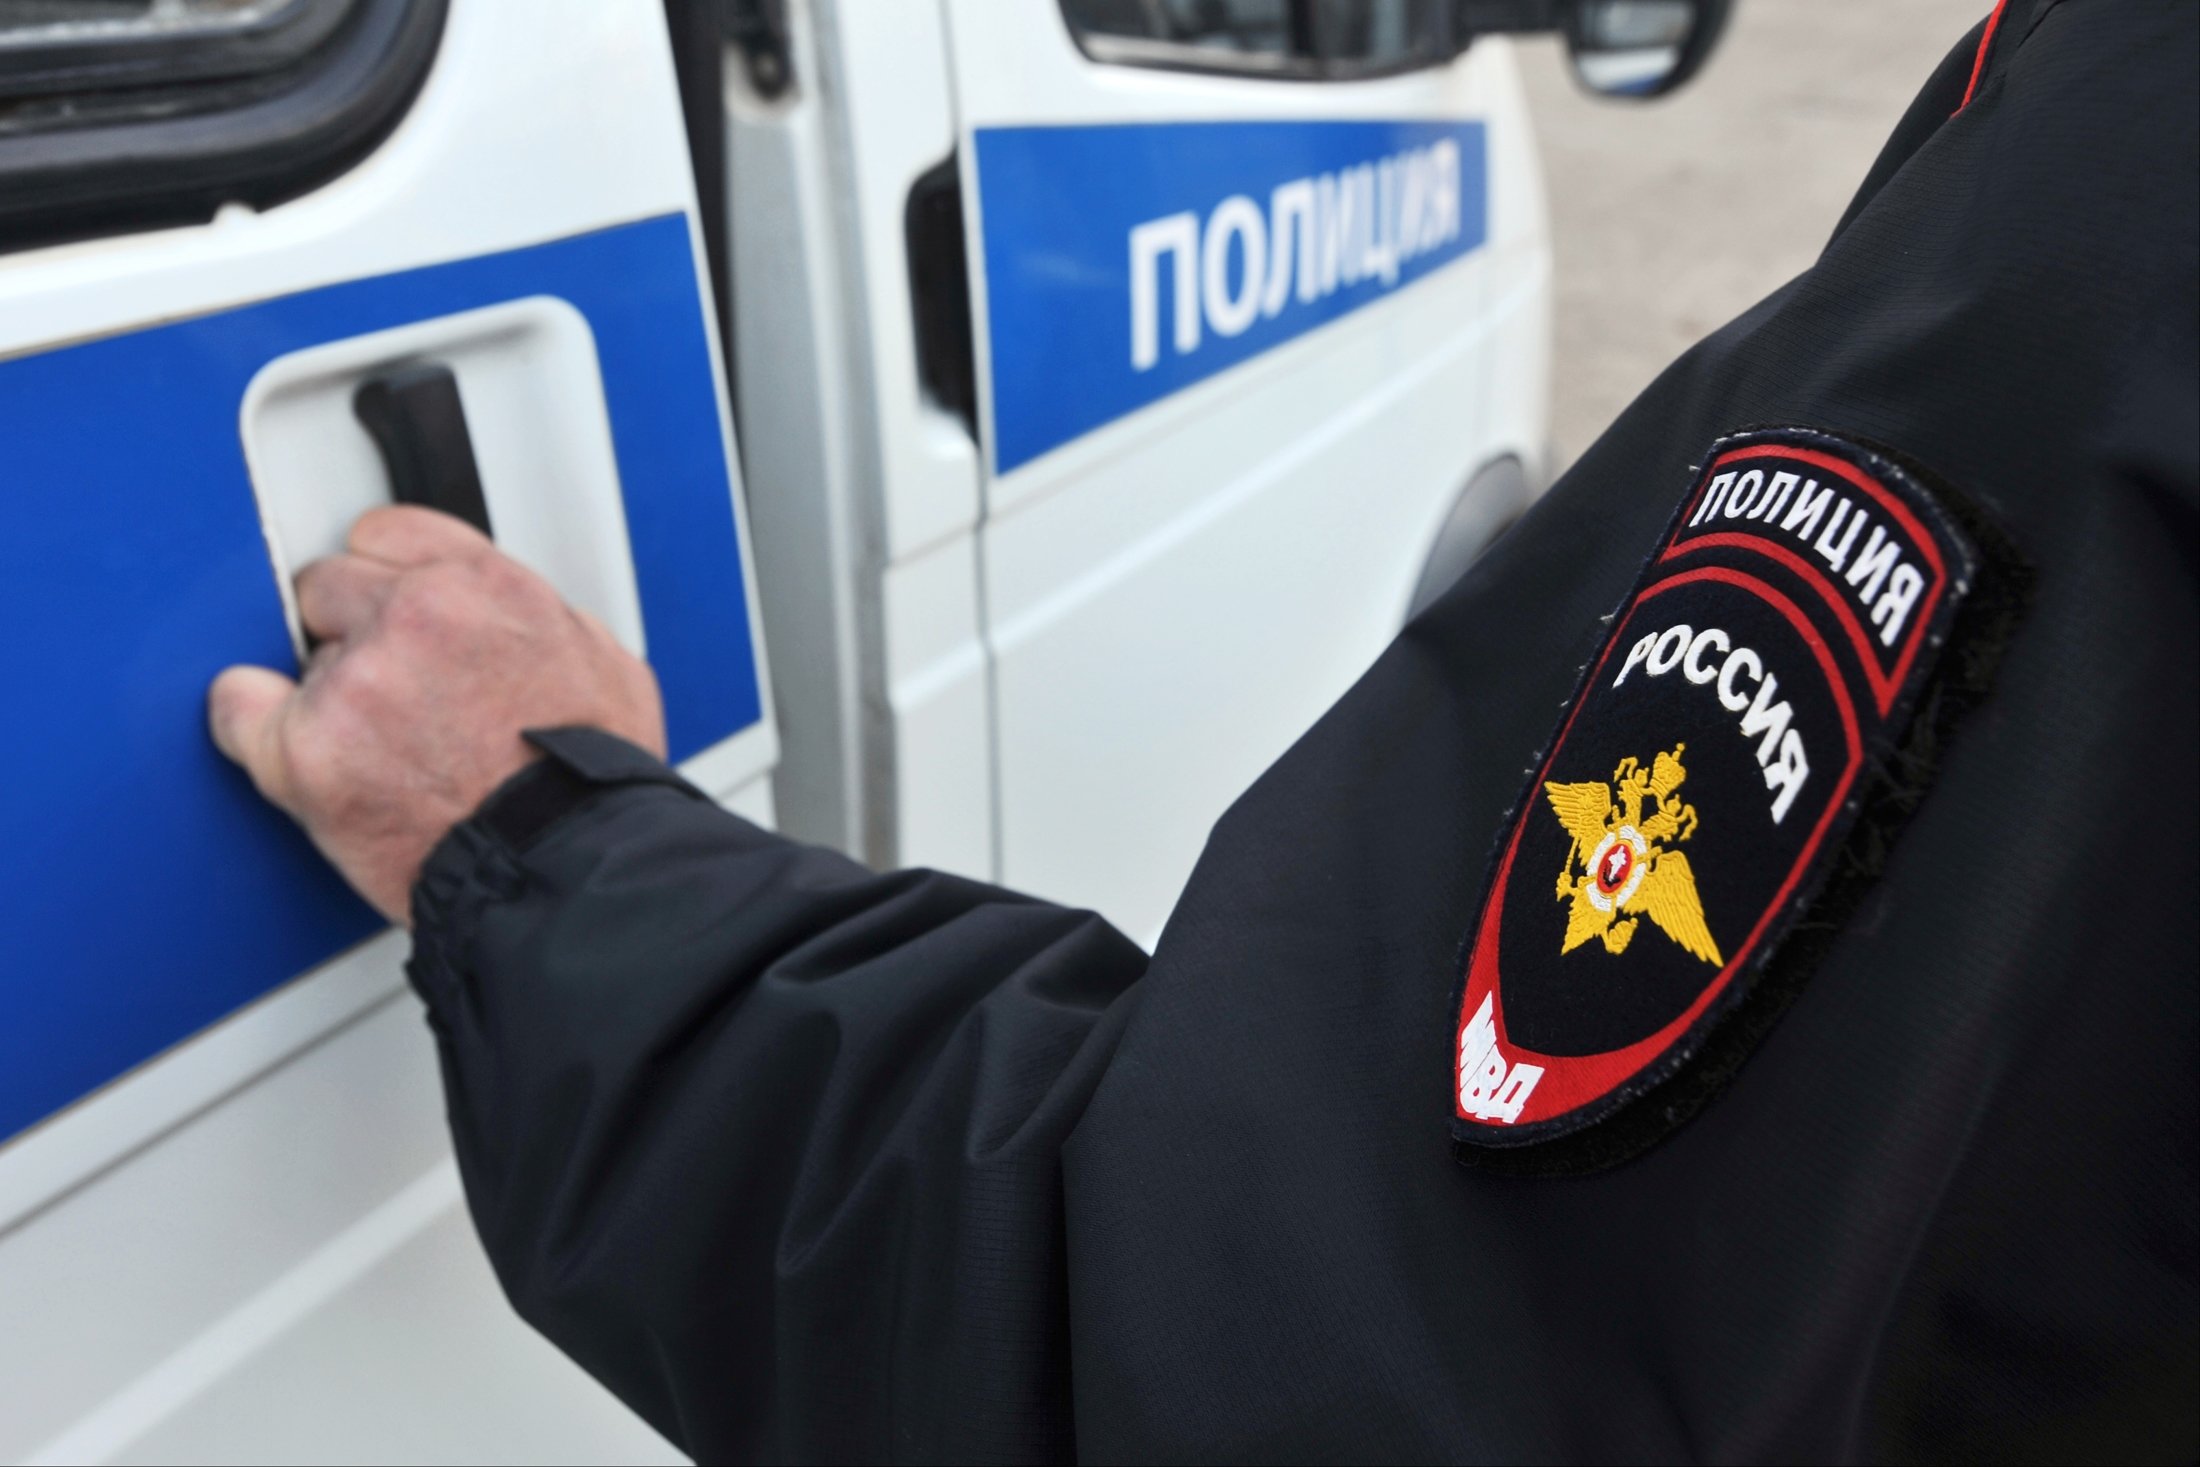 В Петербурге четверо мужчин похитили узбекистанца и вымогали у него 800 тысяч рублей